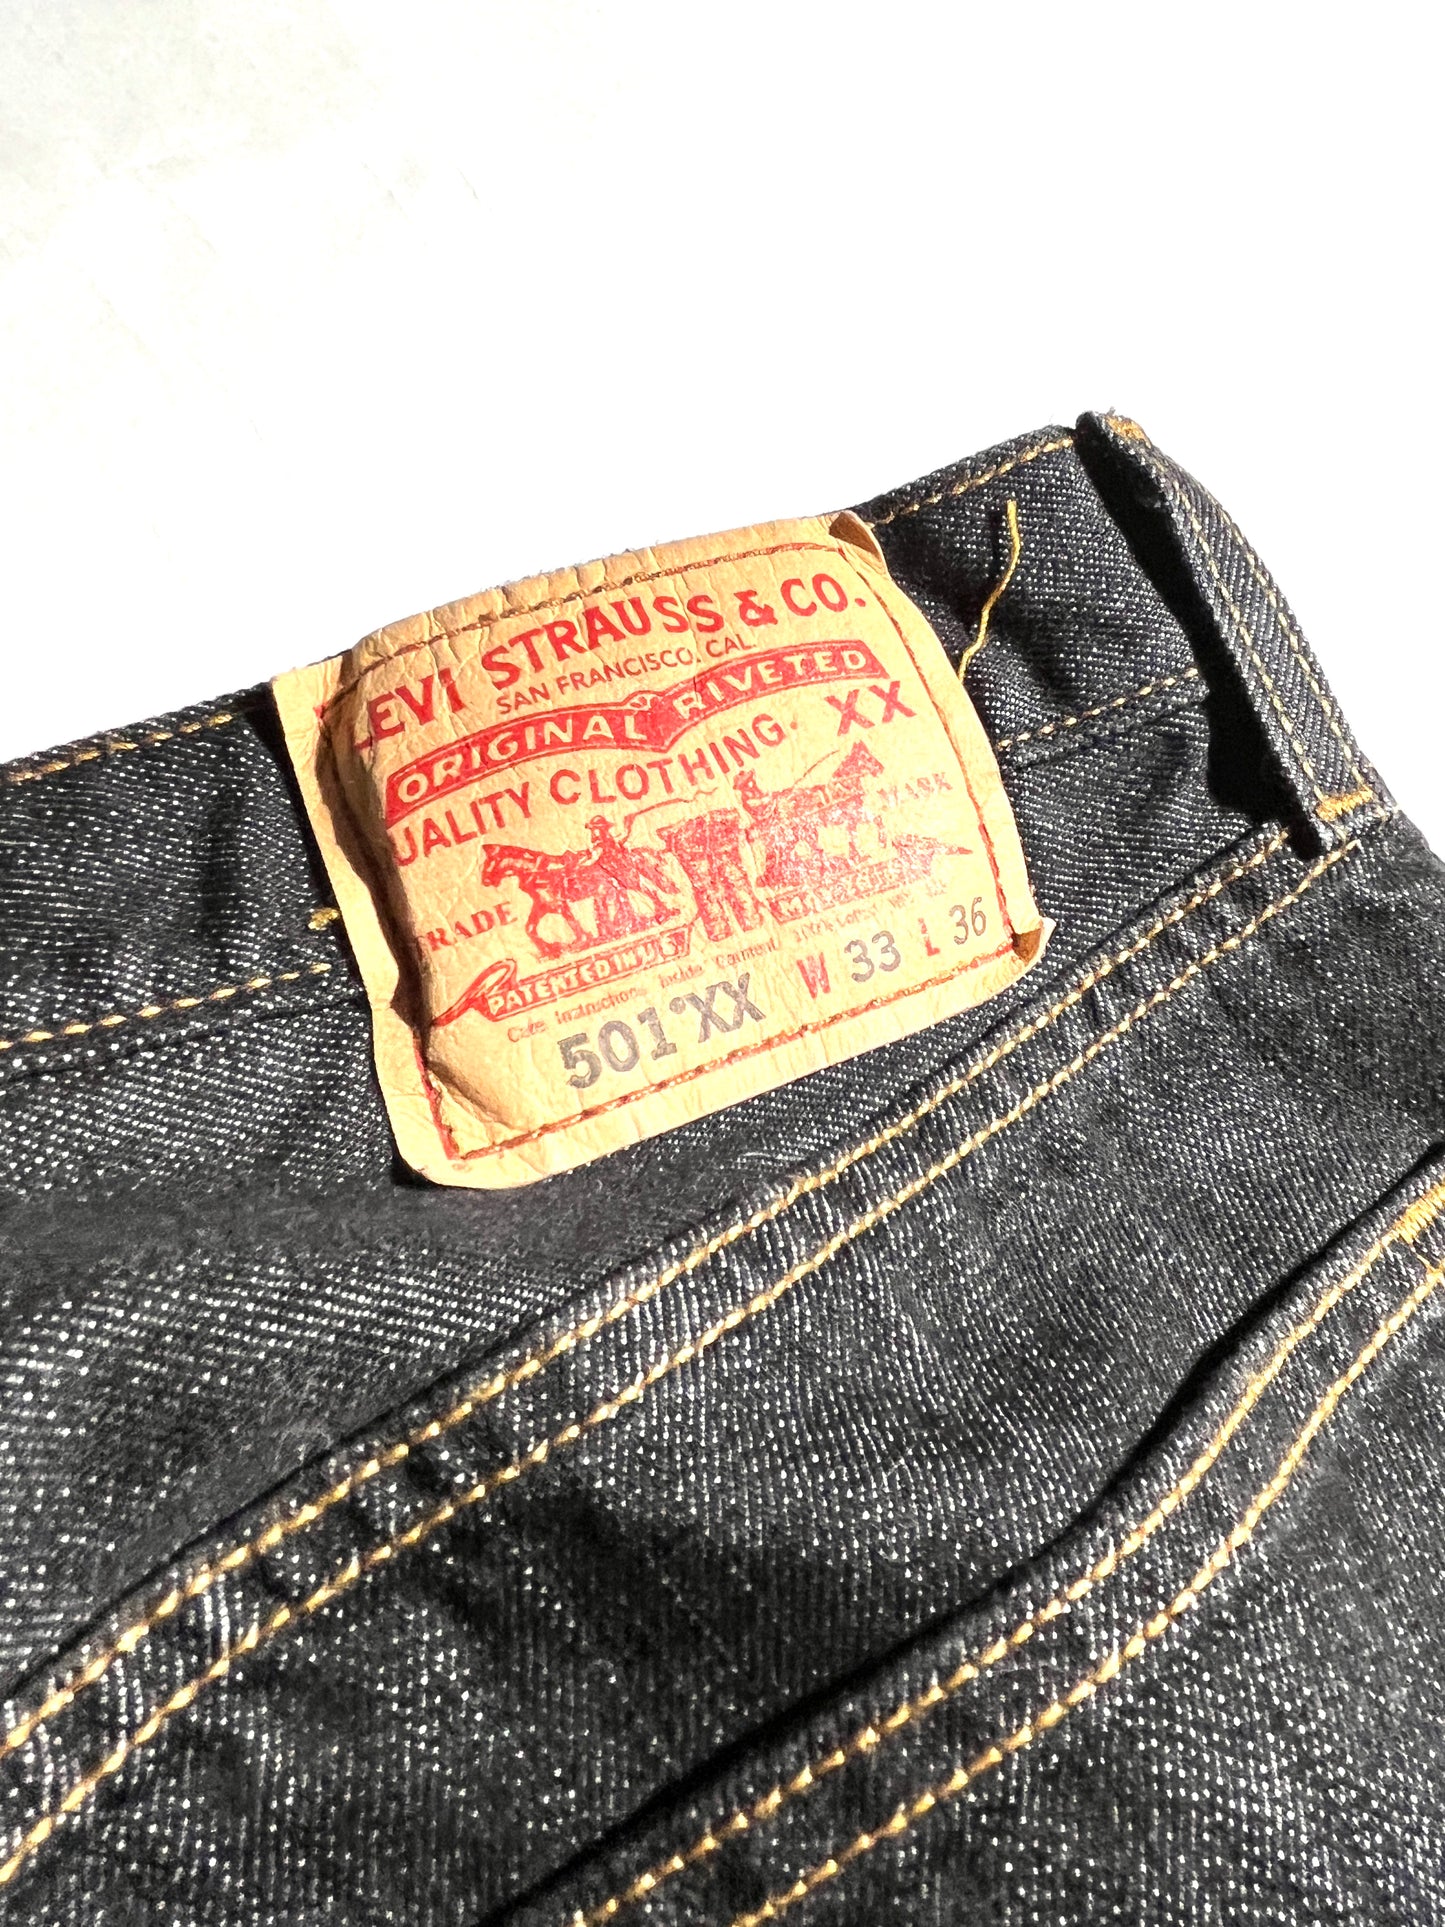 Vintage Levis Jeans 501xx Dark Wash